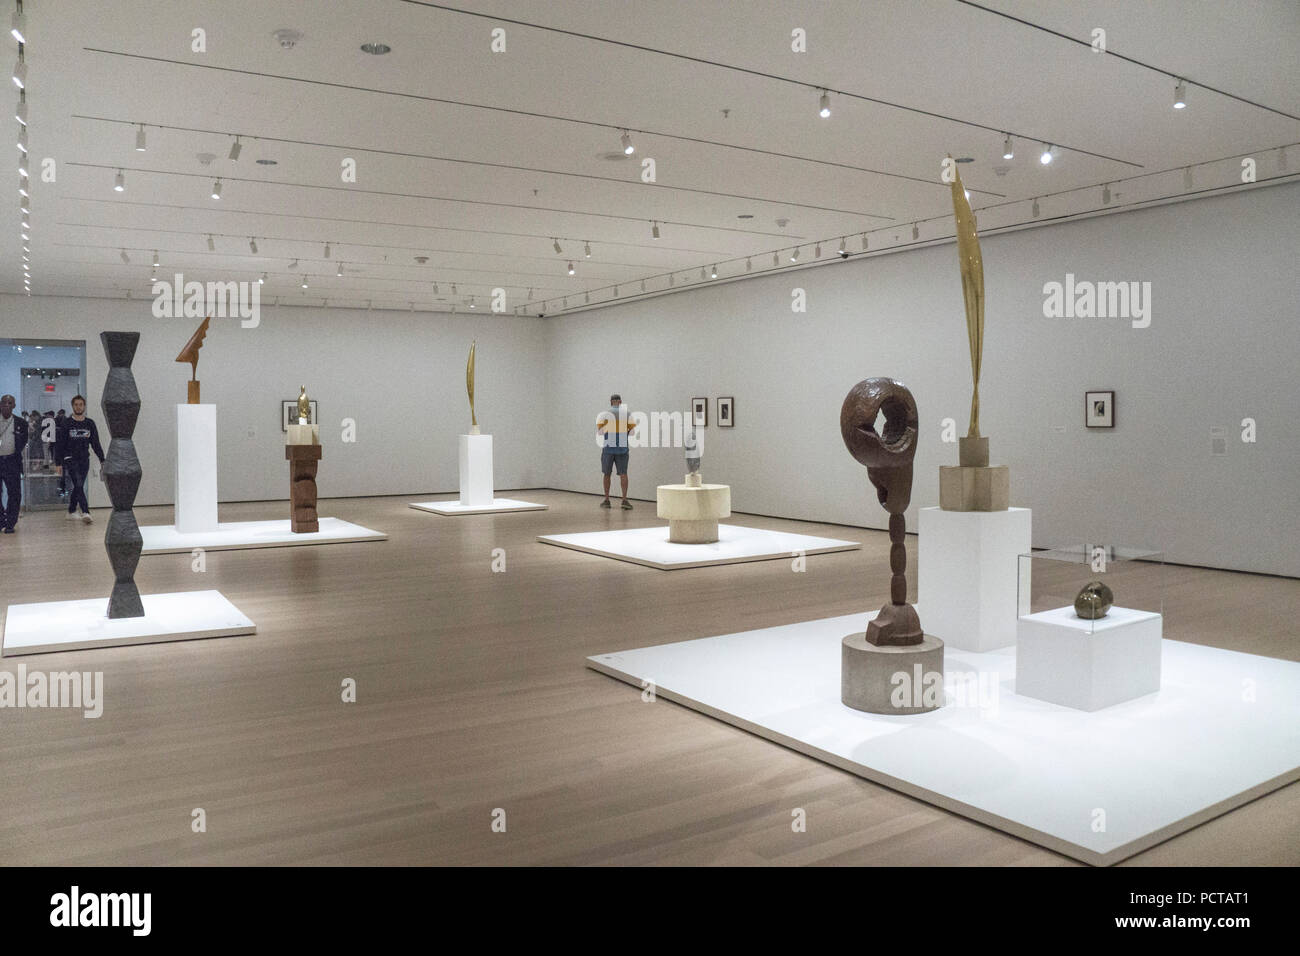 Instalación de pequeña exposición Constantin Brancusi Escultura del Museo de Arte Moderno de Nueva York comisariada desde el MoMA Brancusi holdings cerrar 18 Feb 2019 Foto de stock